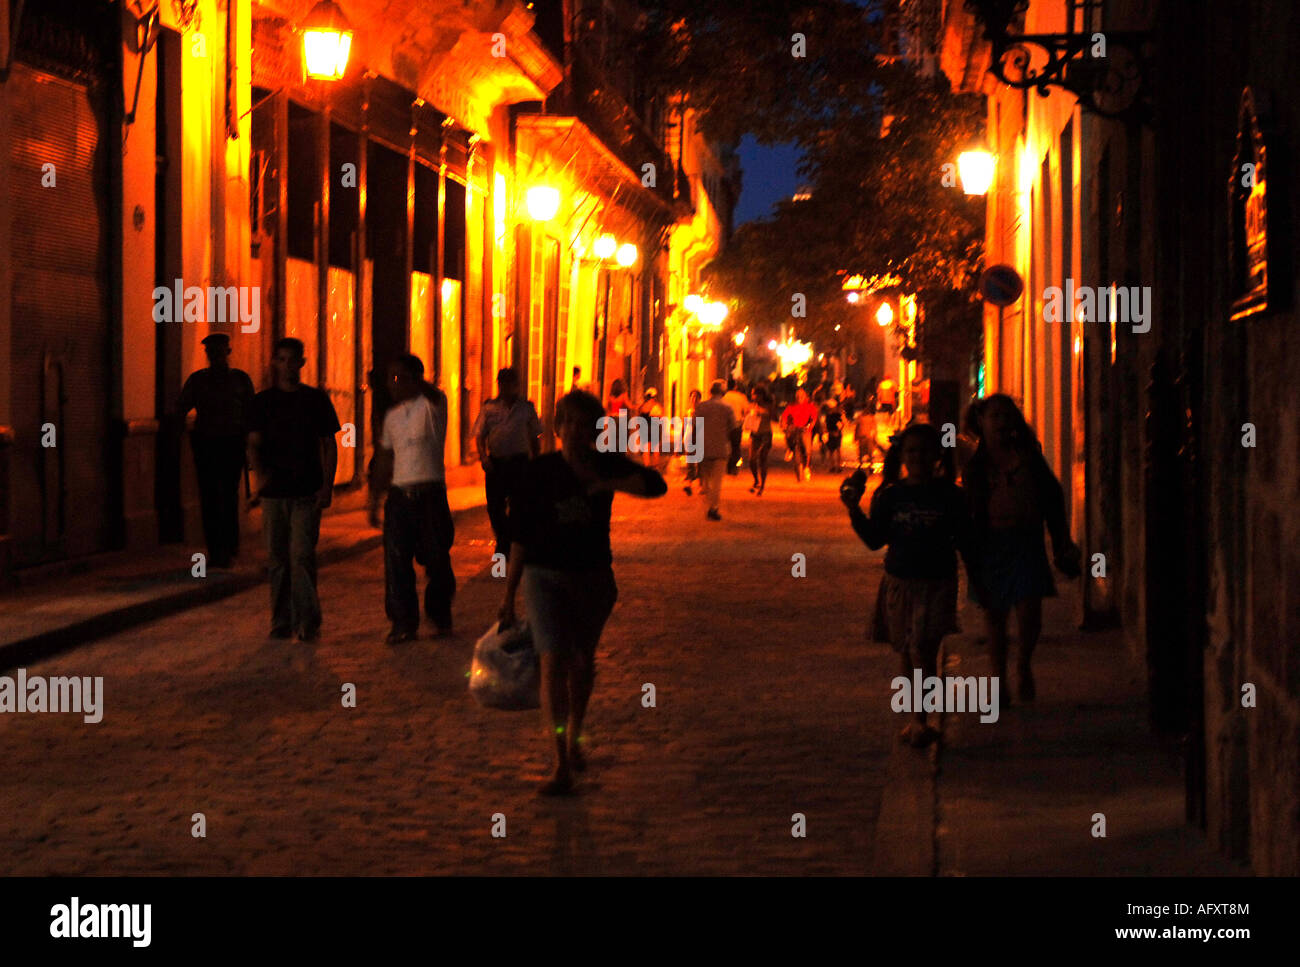 Cuba Havana Habana Vieja streets at night Stock Photo - Alamy